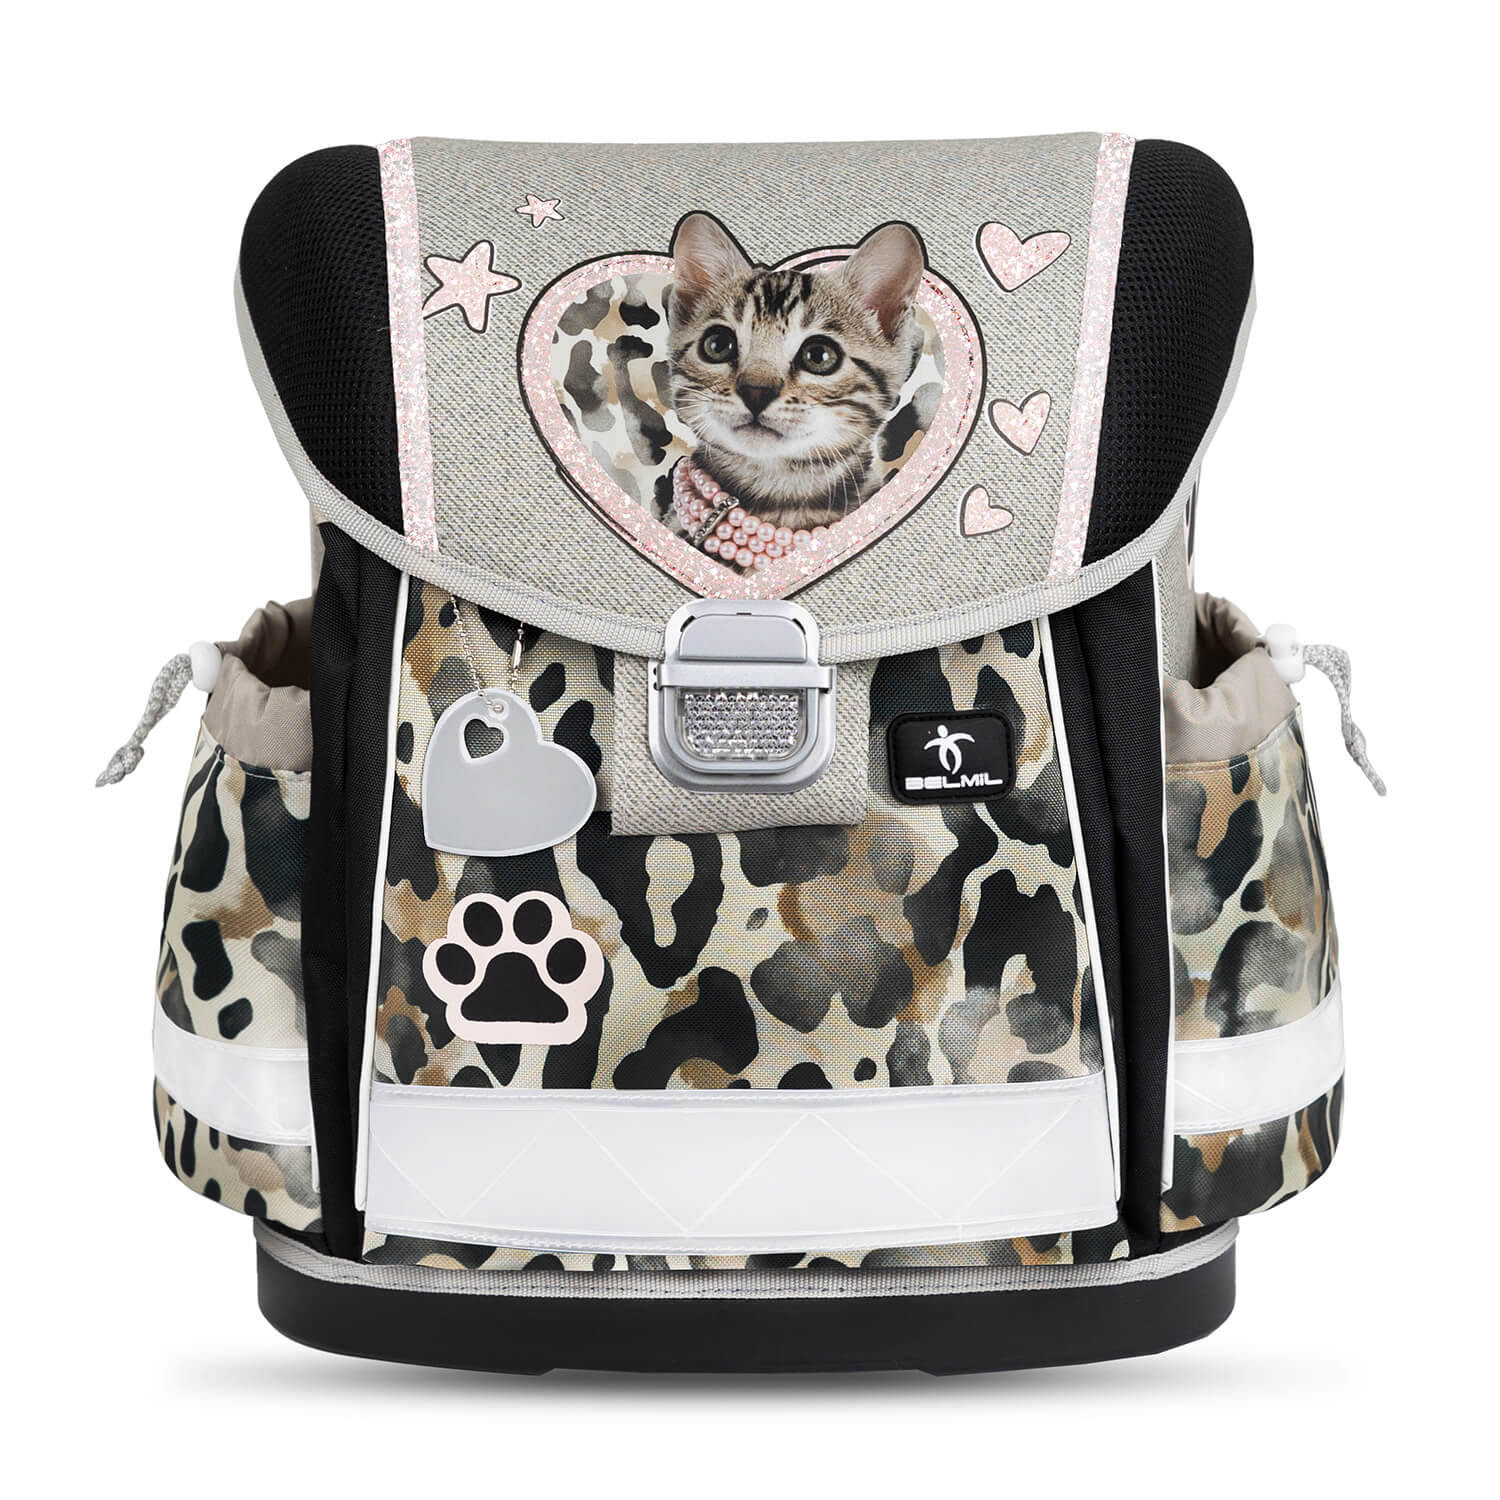 Classy Wild Cat schoolbag set 4 pcs